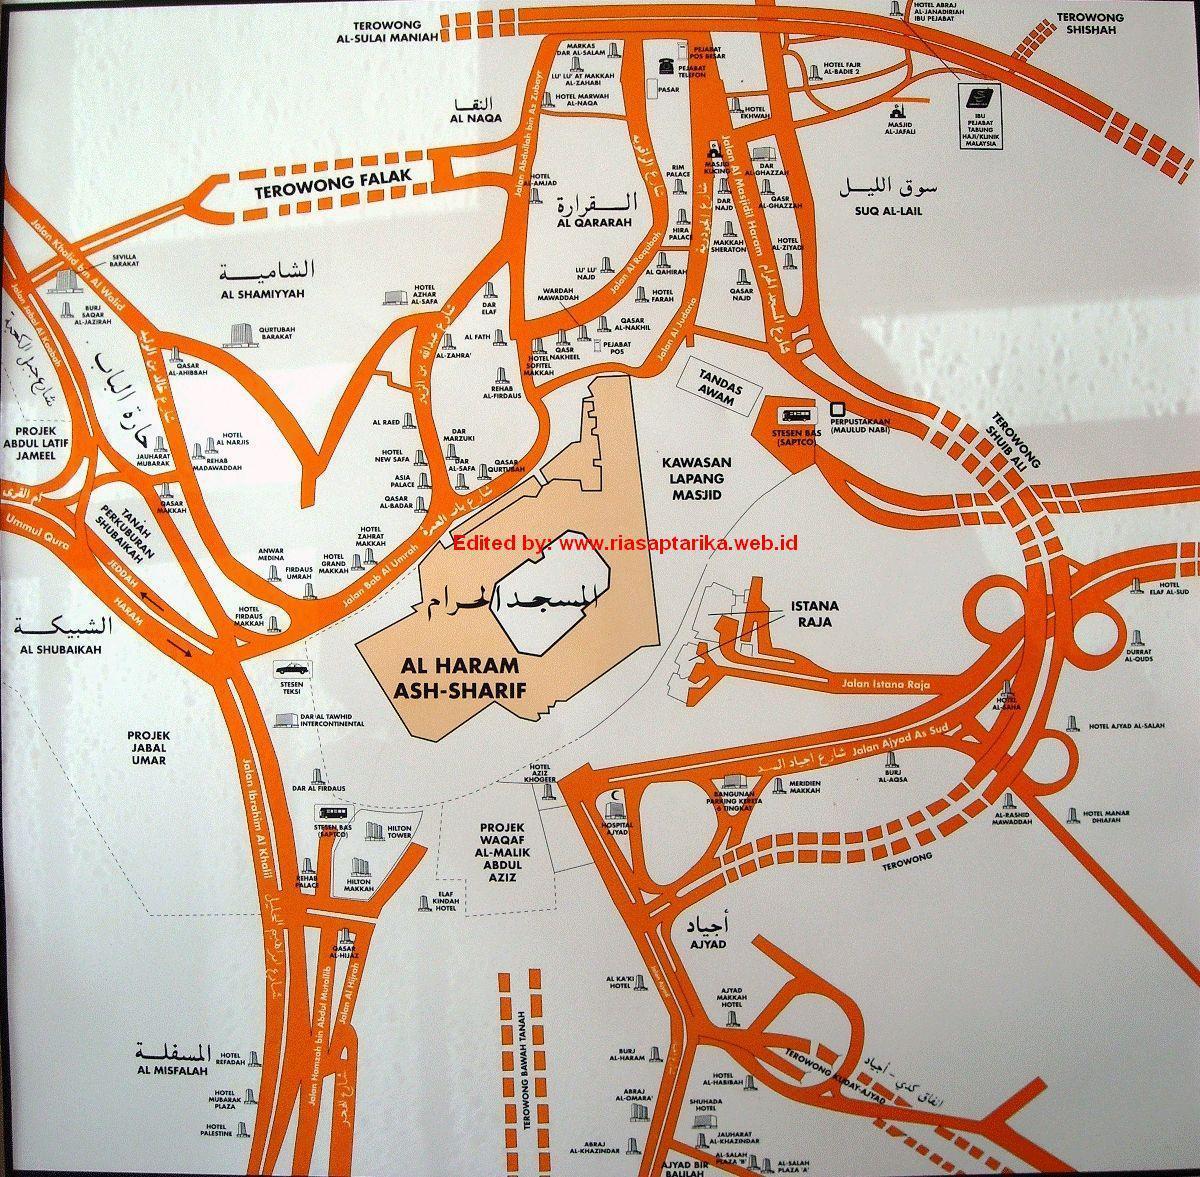 térkép misfalah Mekkája térkép